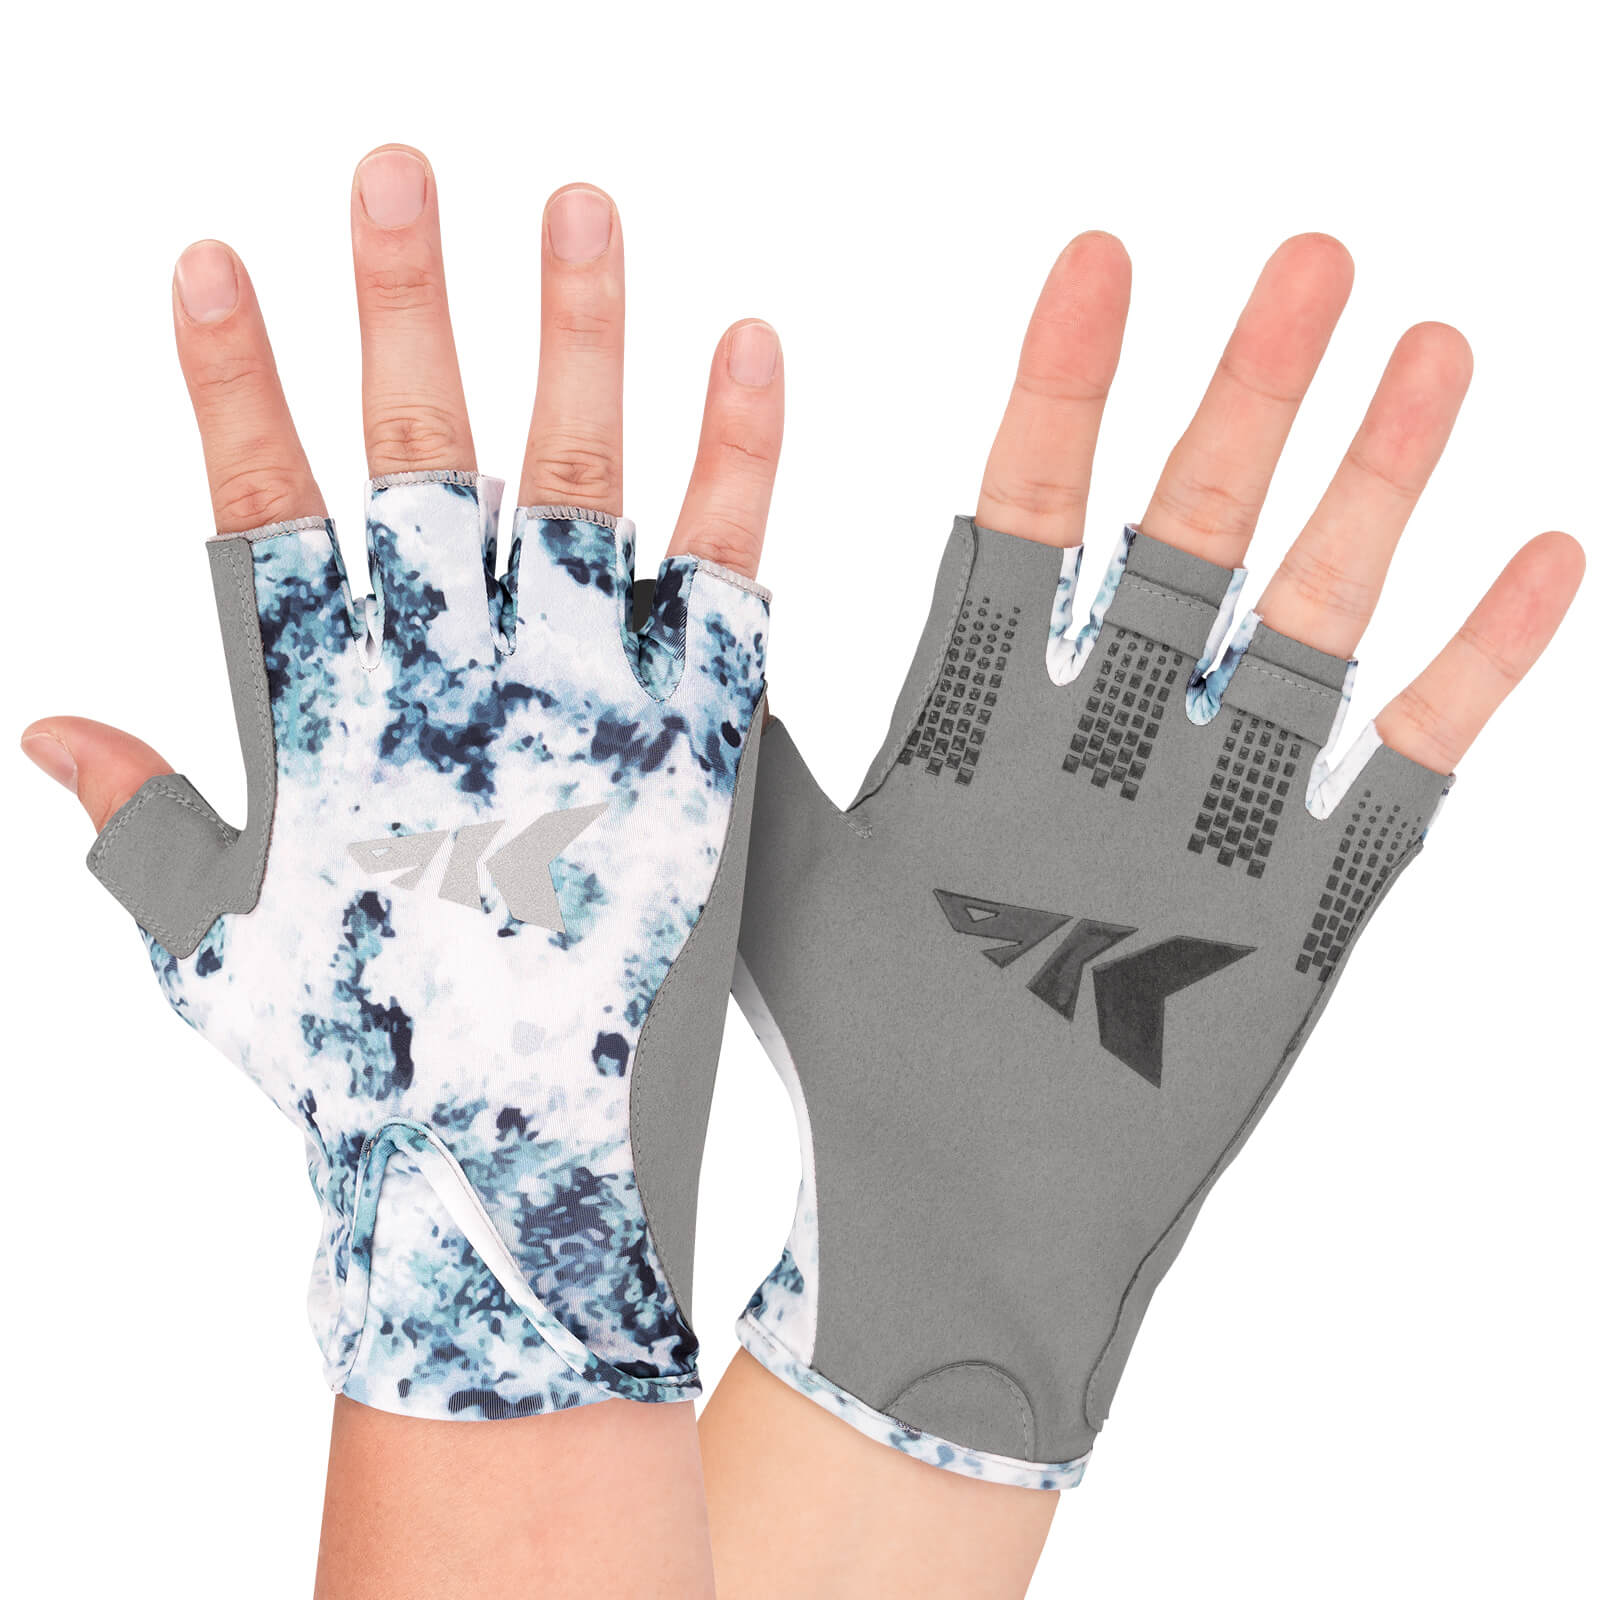 KastKing Gill Raker II Gloves